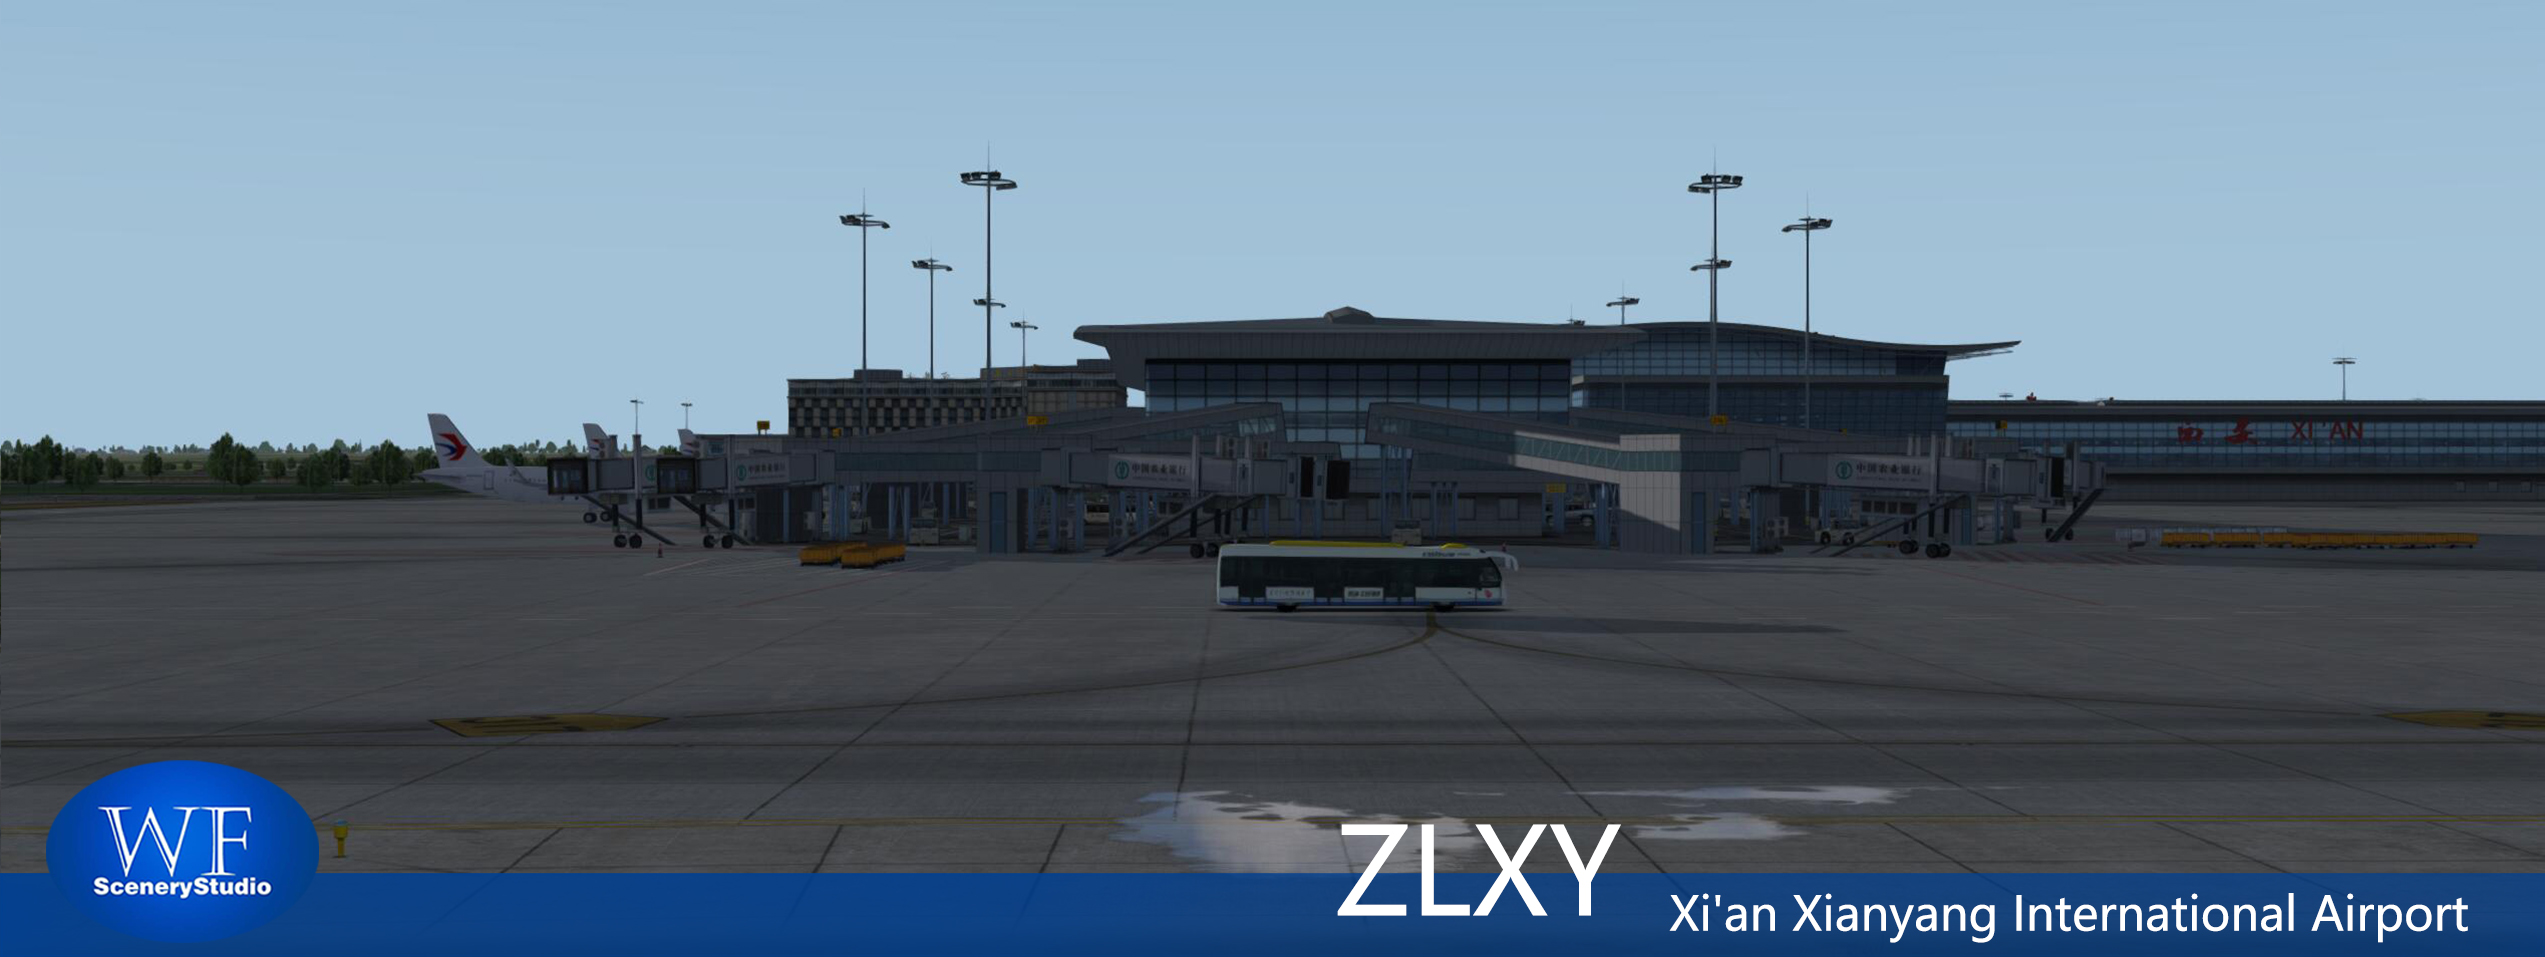 西安咸阳国际机场FSX和P3DV3 版本发布-5629 